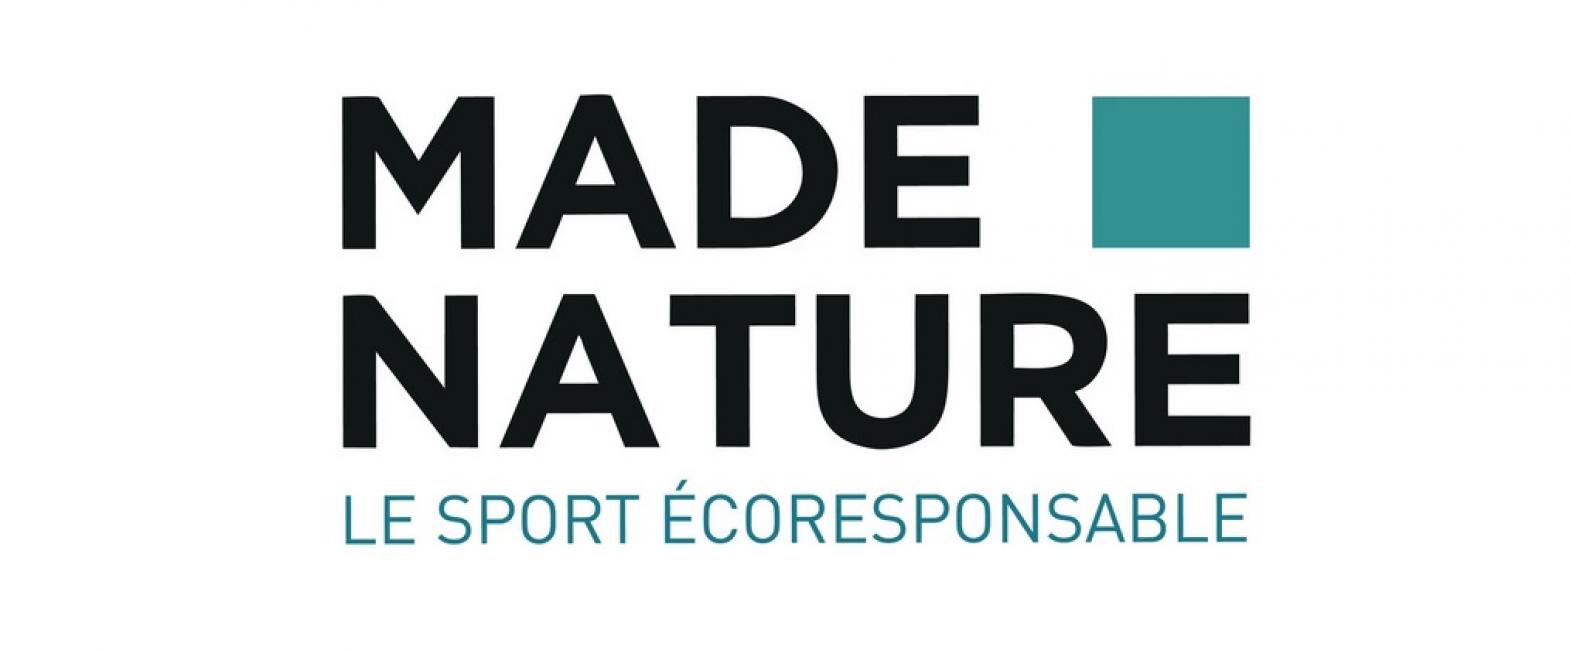 Made-nature.com : une marketplace dédiée aux produits éco-responsables